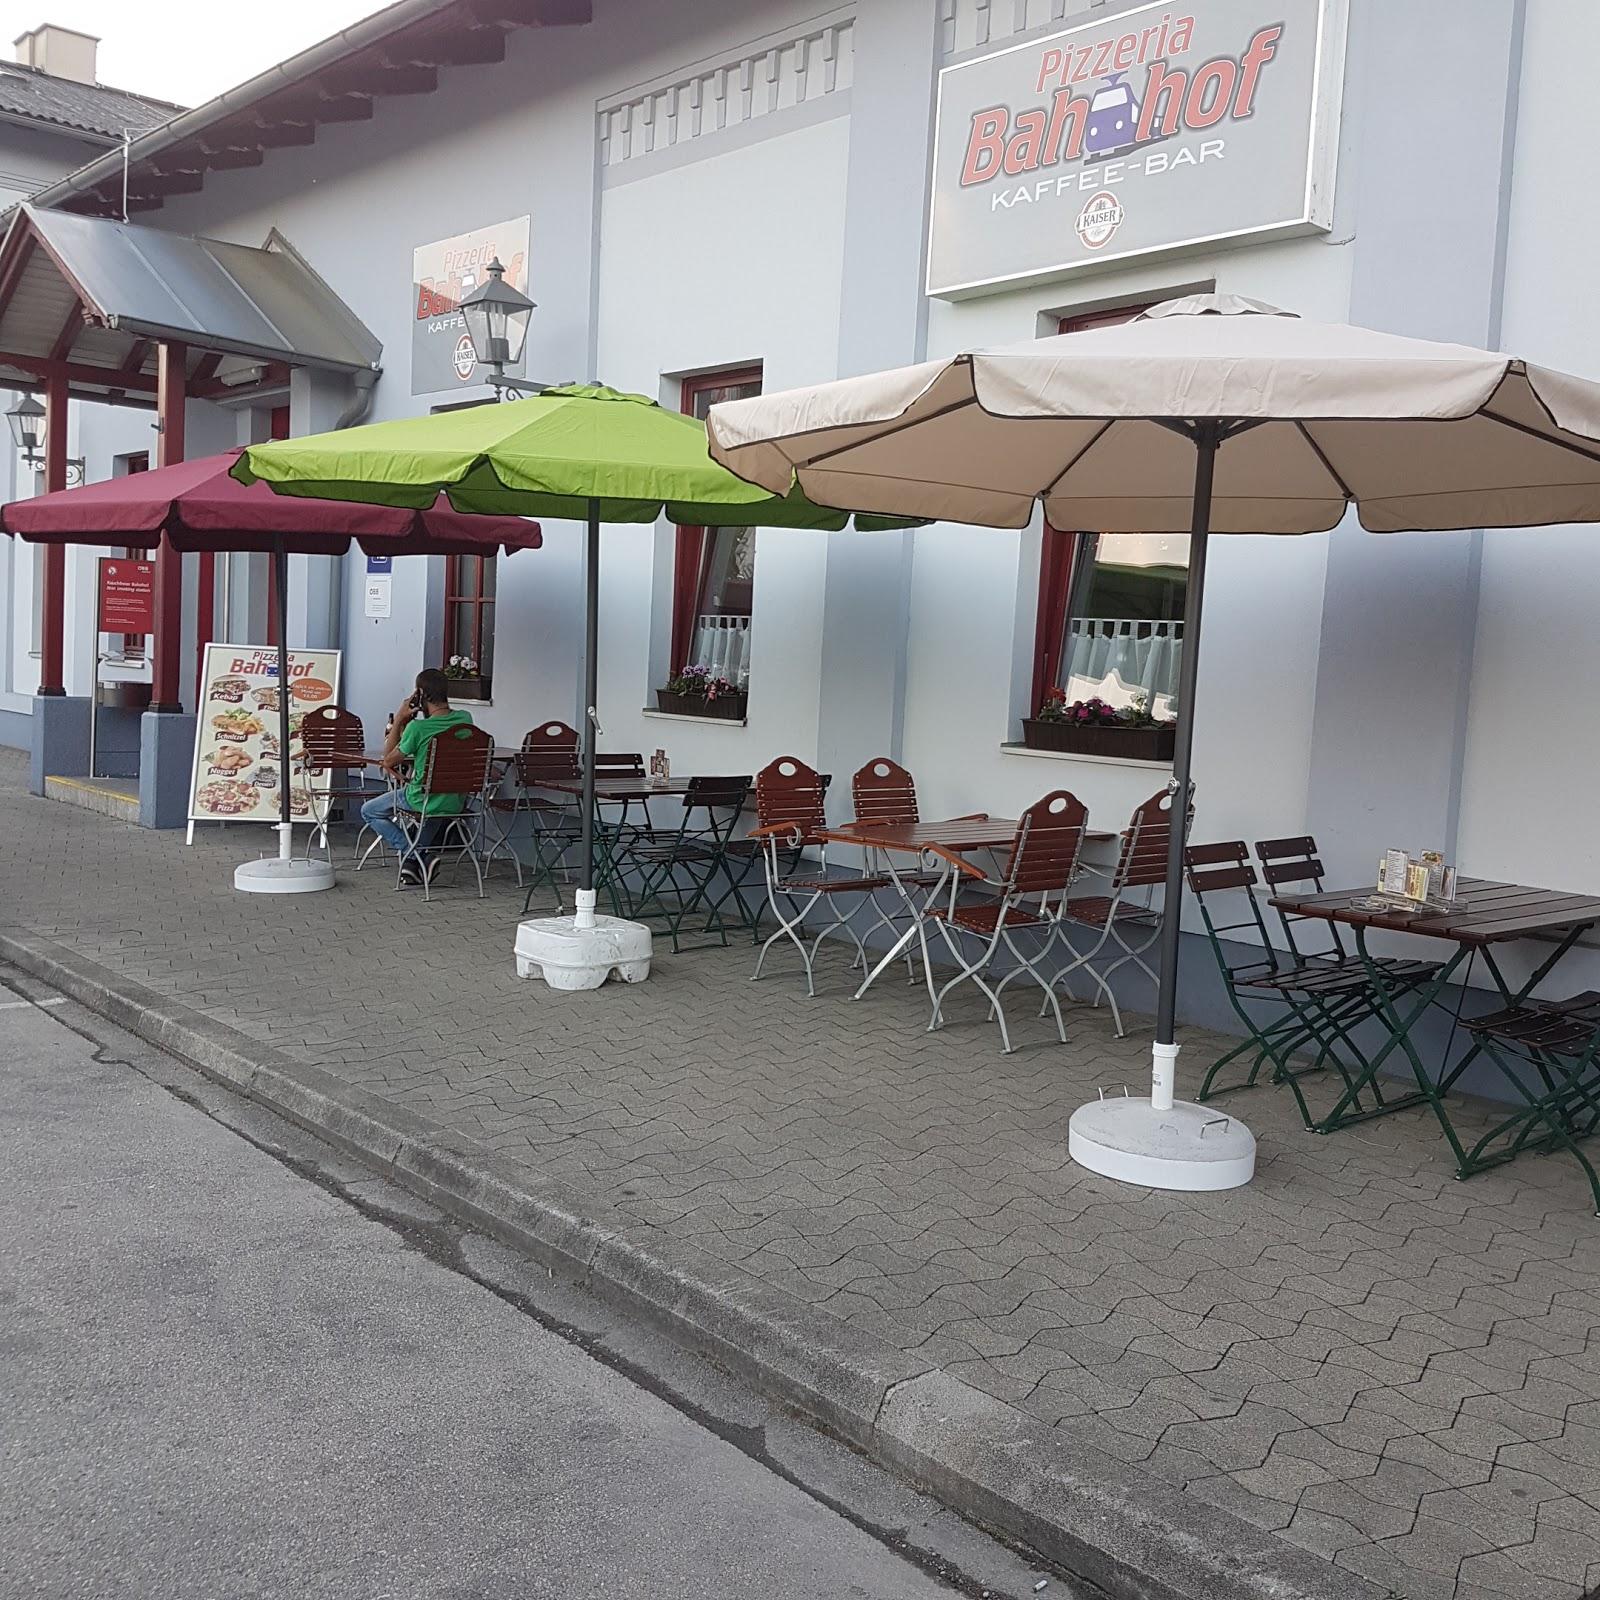 Restaurant "Bahnhof Pizzeria" in Ybbs an der Donau